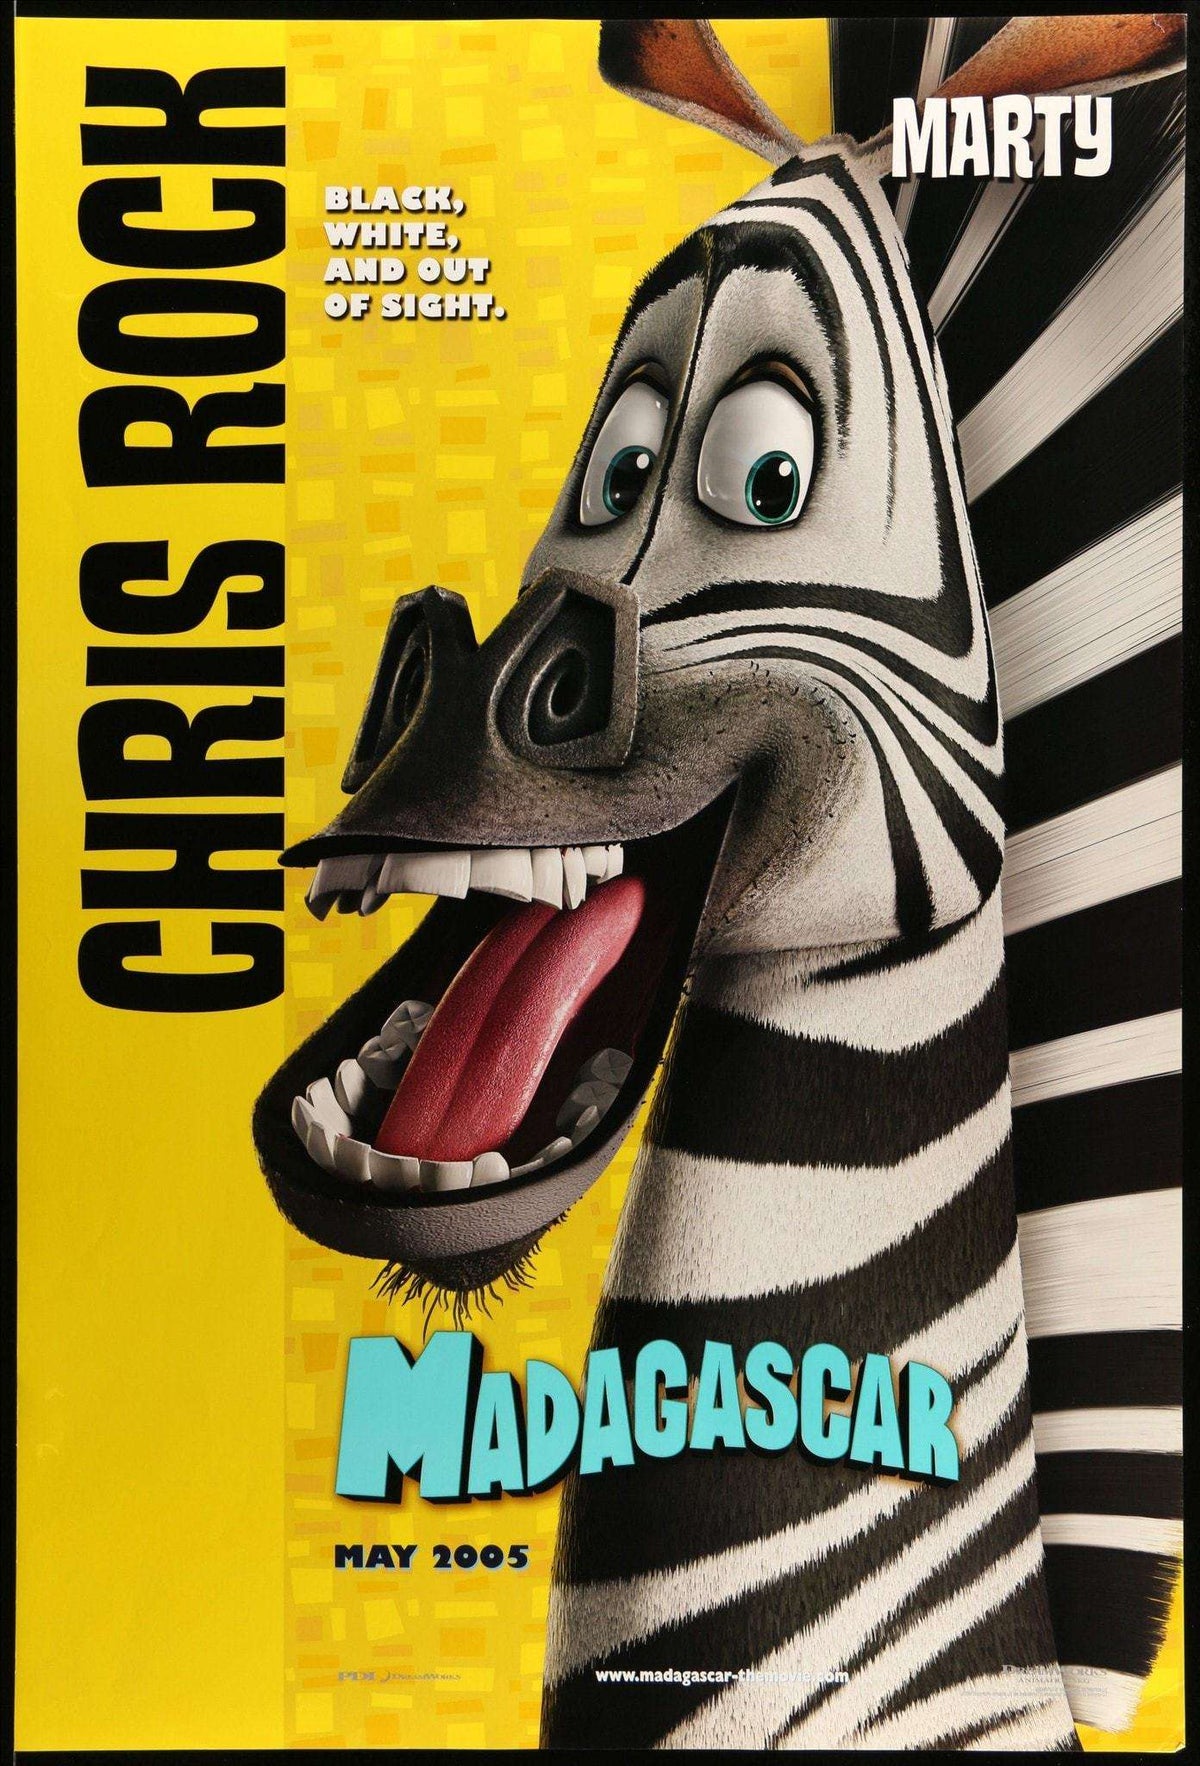 Madagascar (2005) original movie poster for sale at Original Film Art